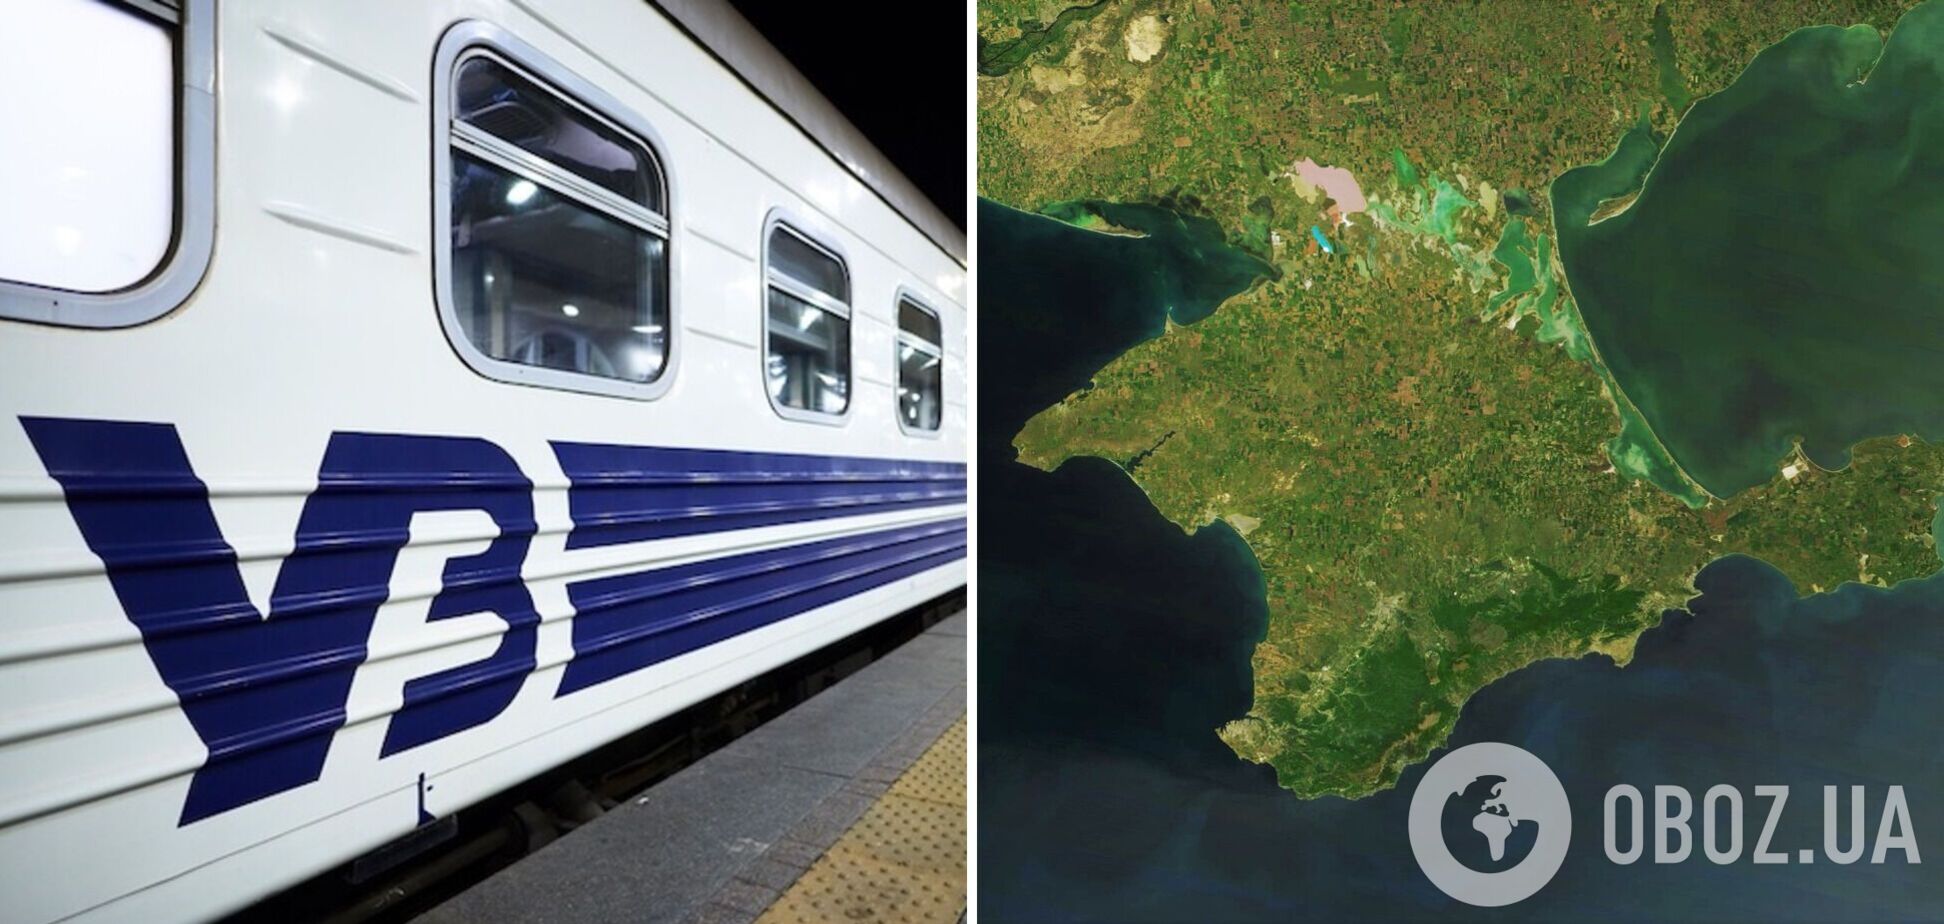 'Укрзалізниця' запускает поезда для эвакуации украинцев из Крыма